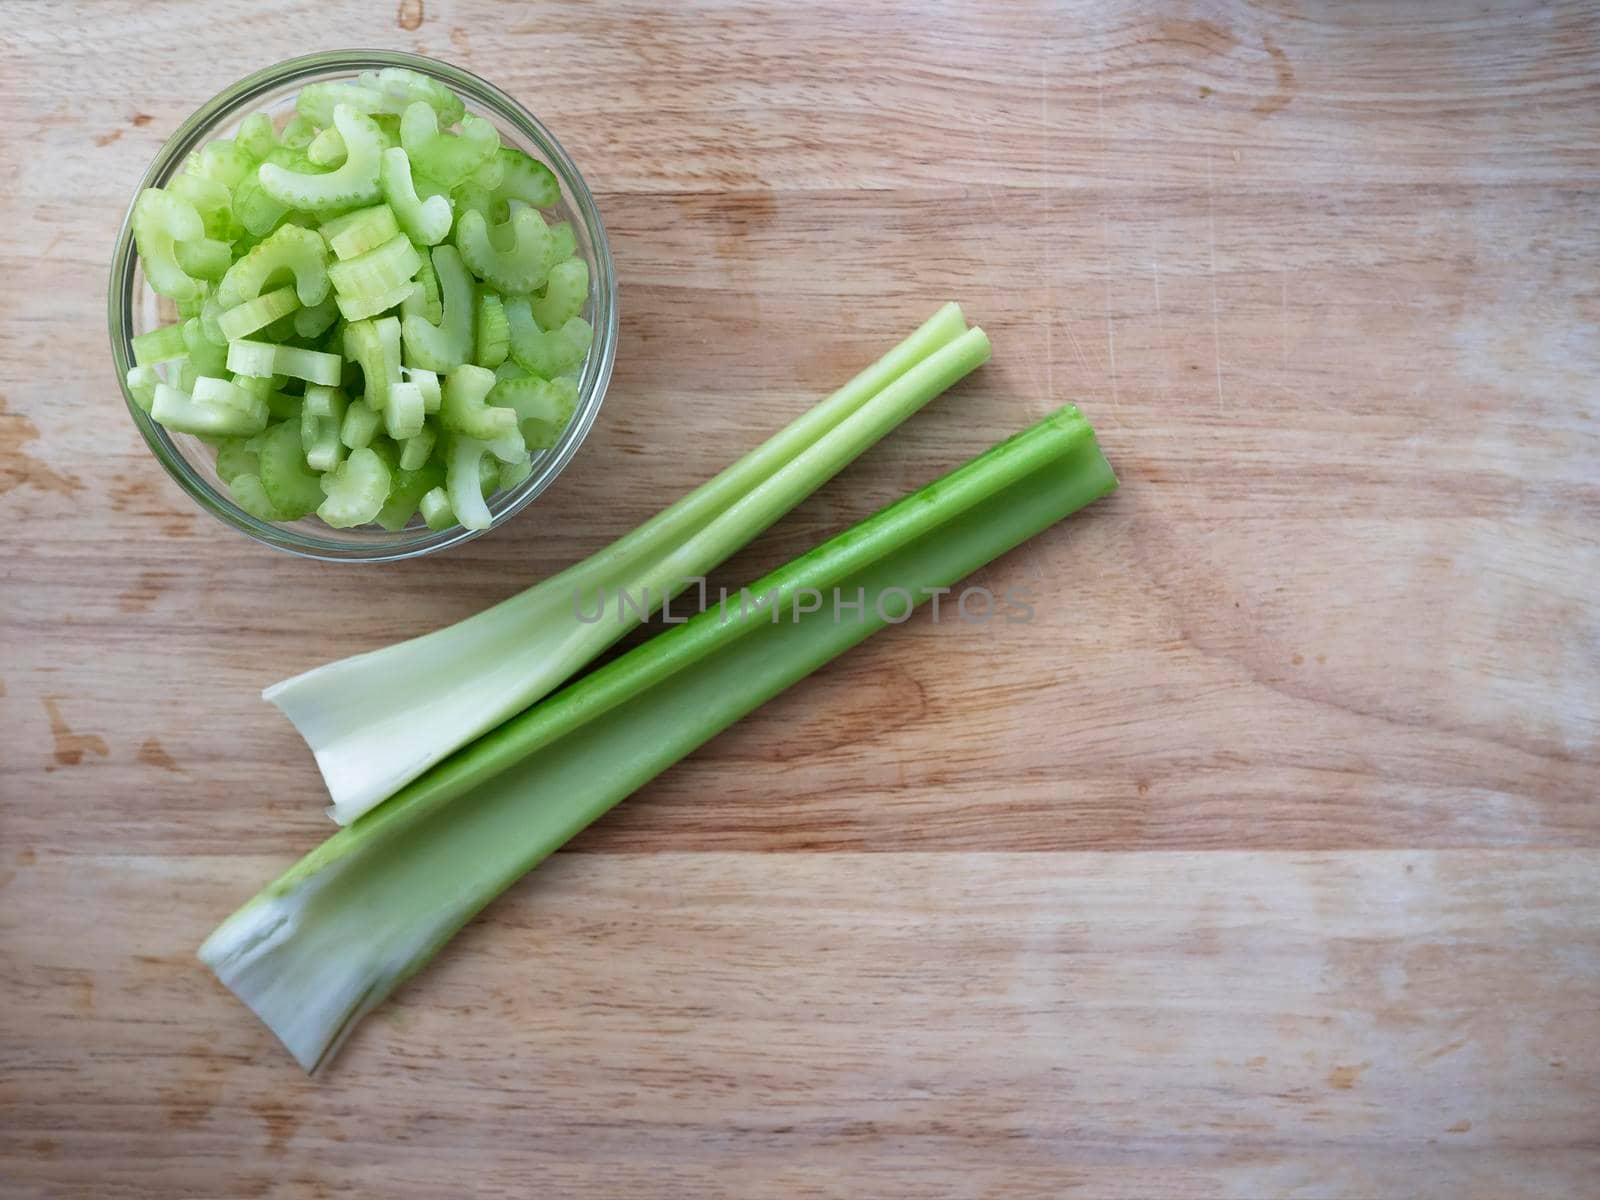 Celery Stalks and Slices by charlotteLake